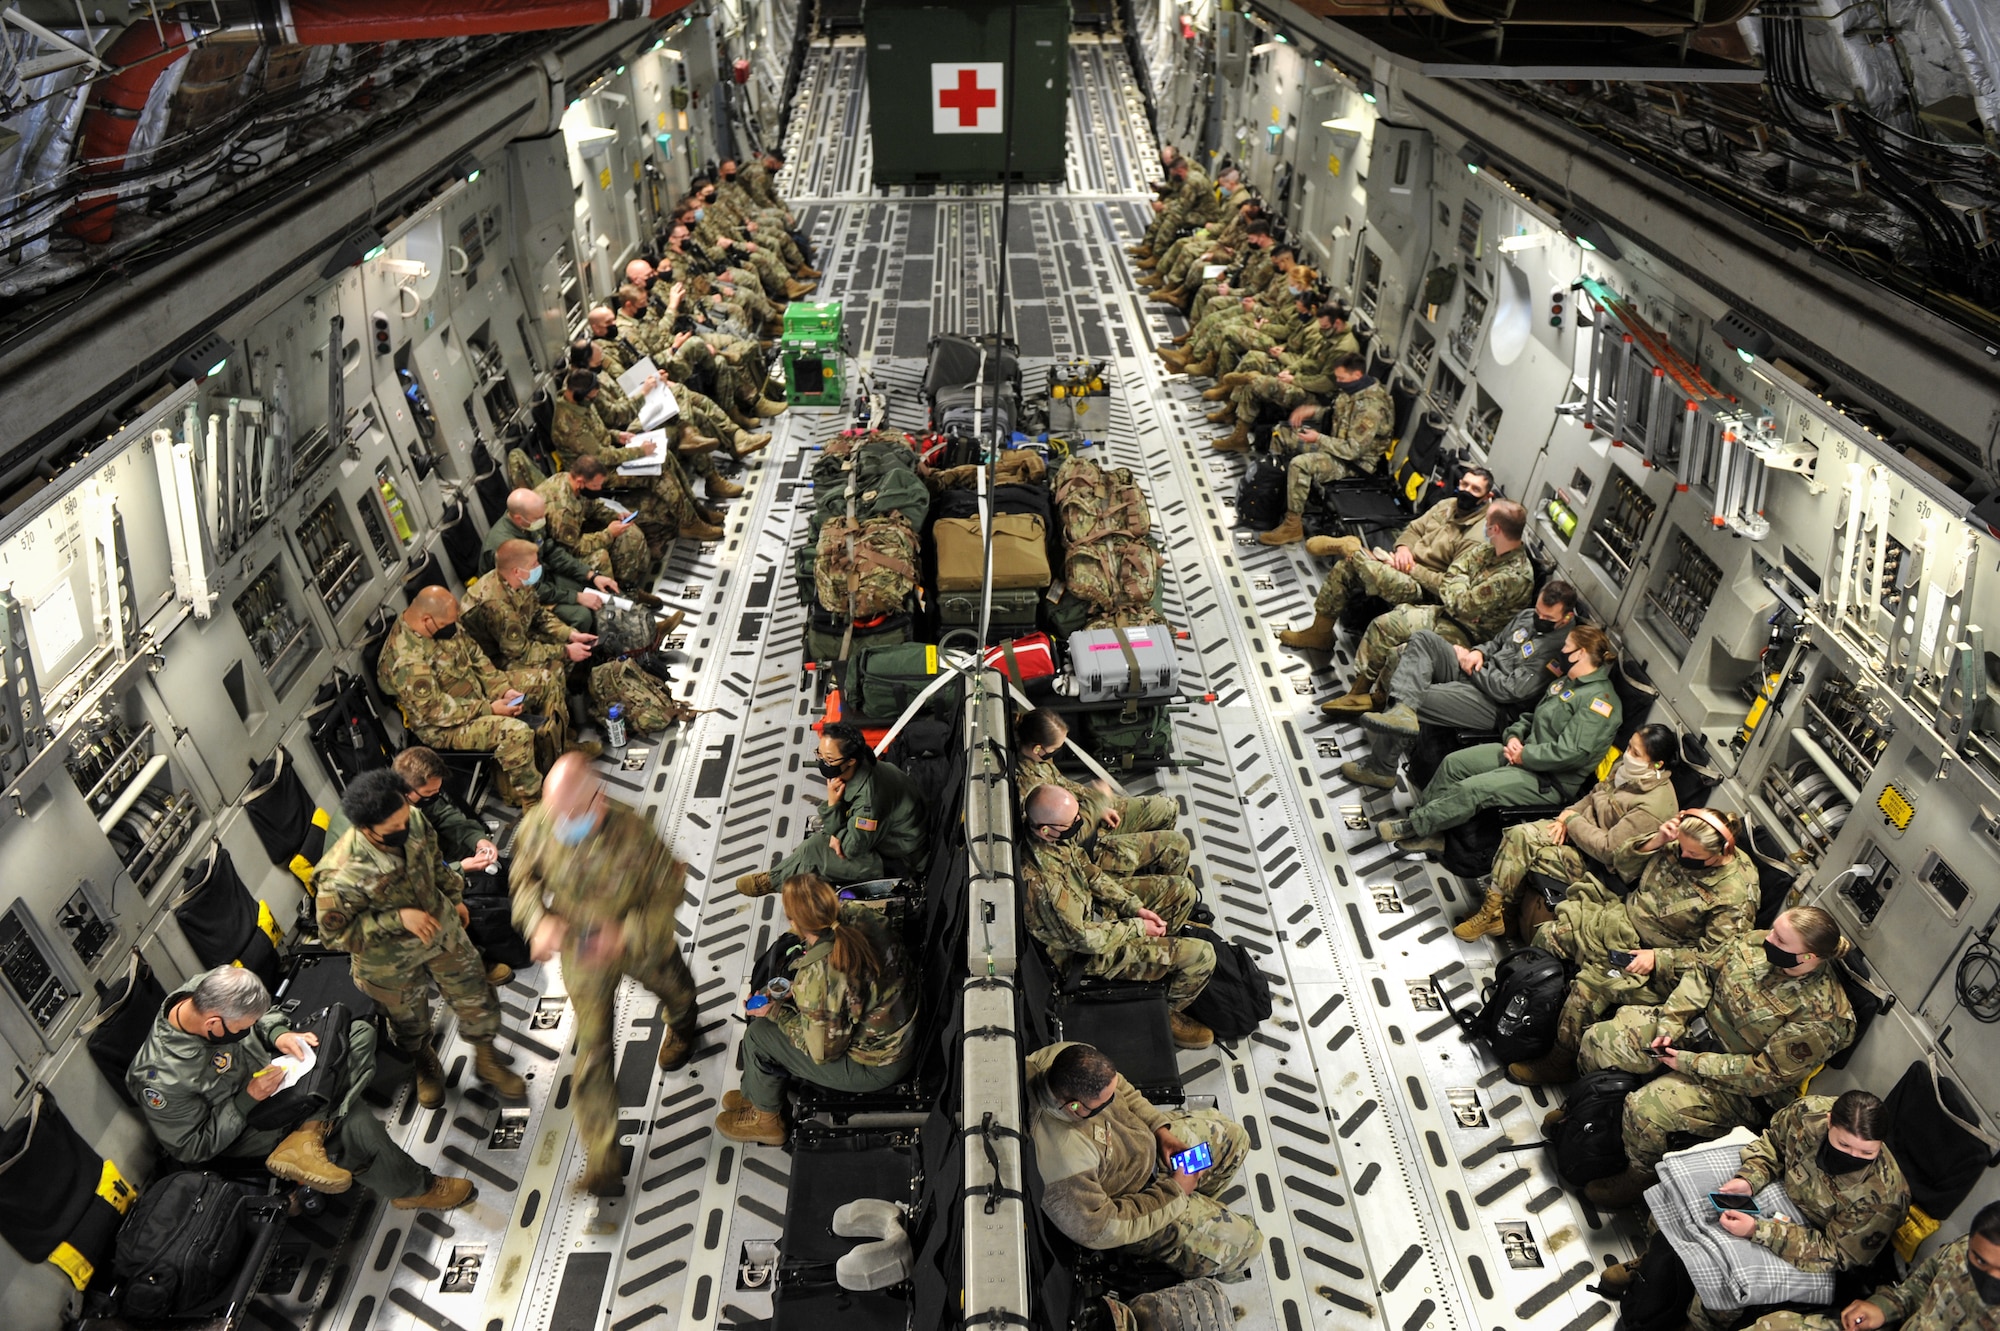 Airmen in C-17 cargo compartment